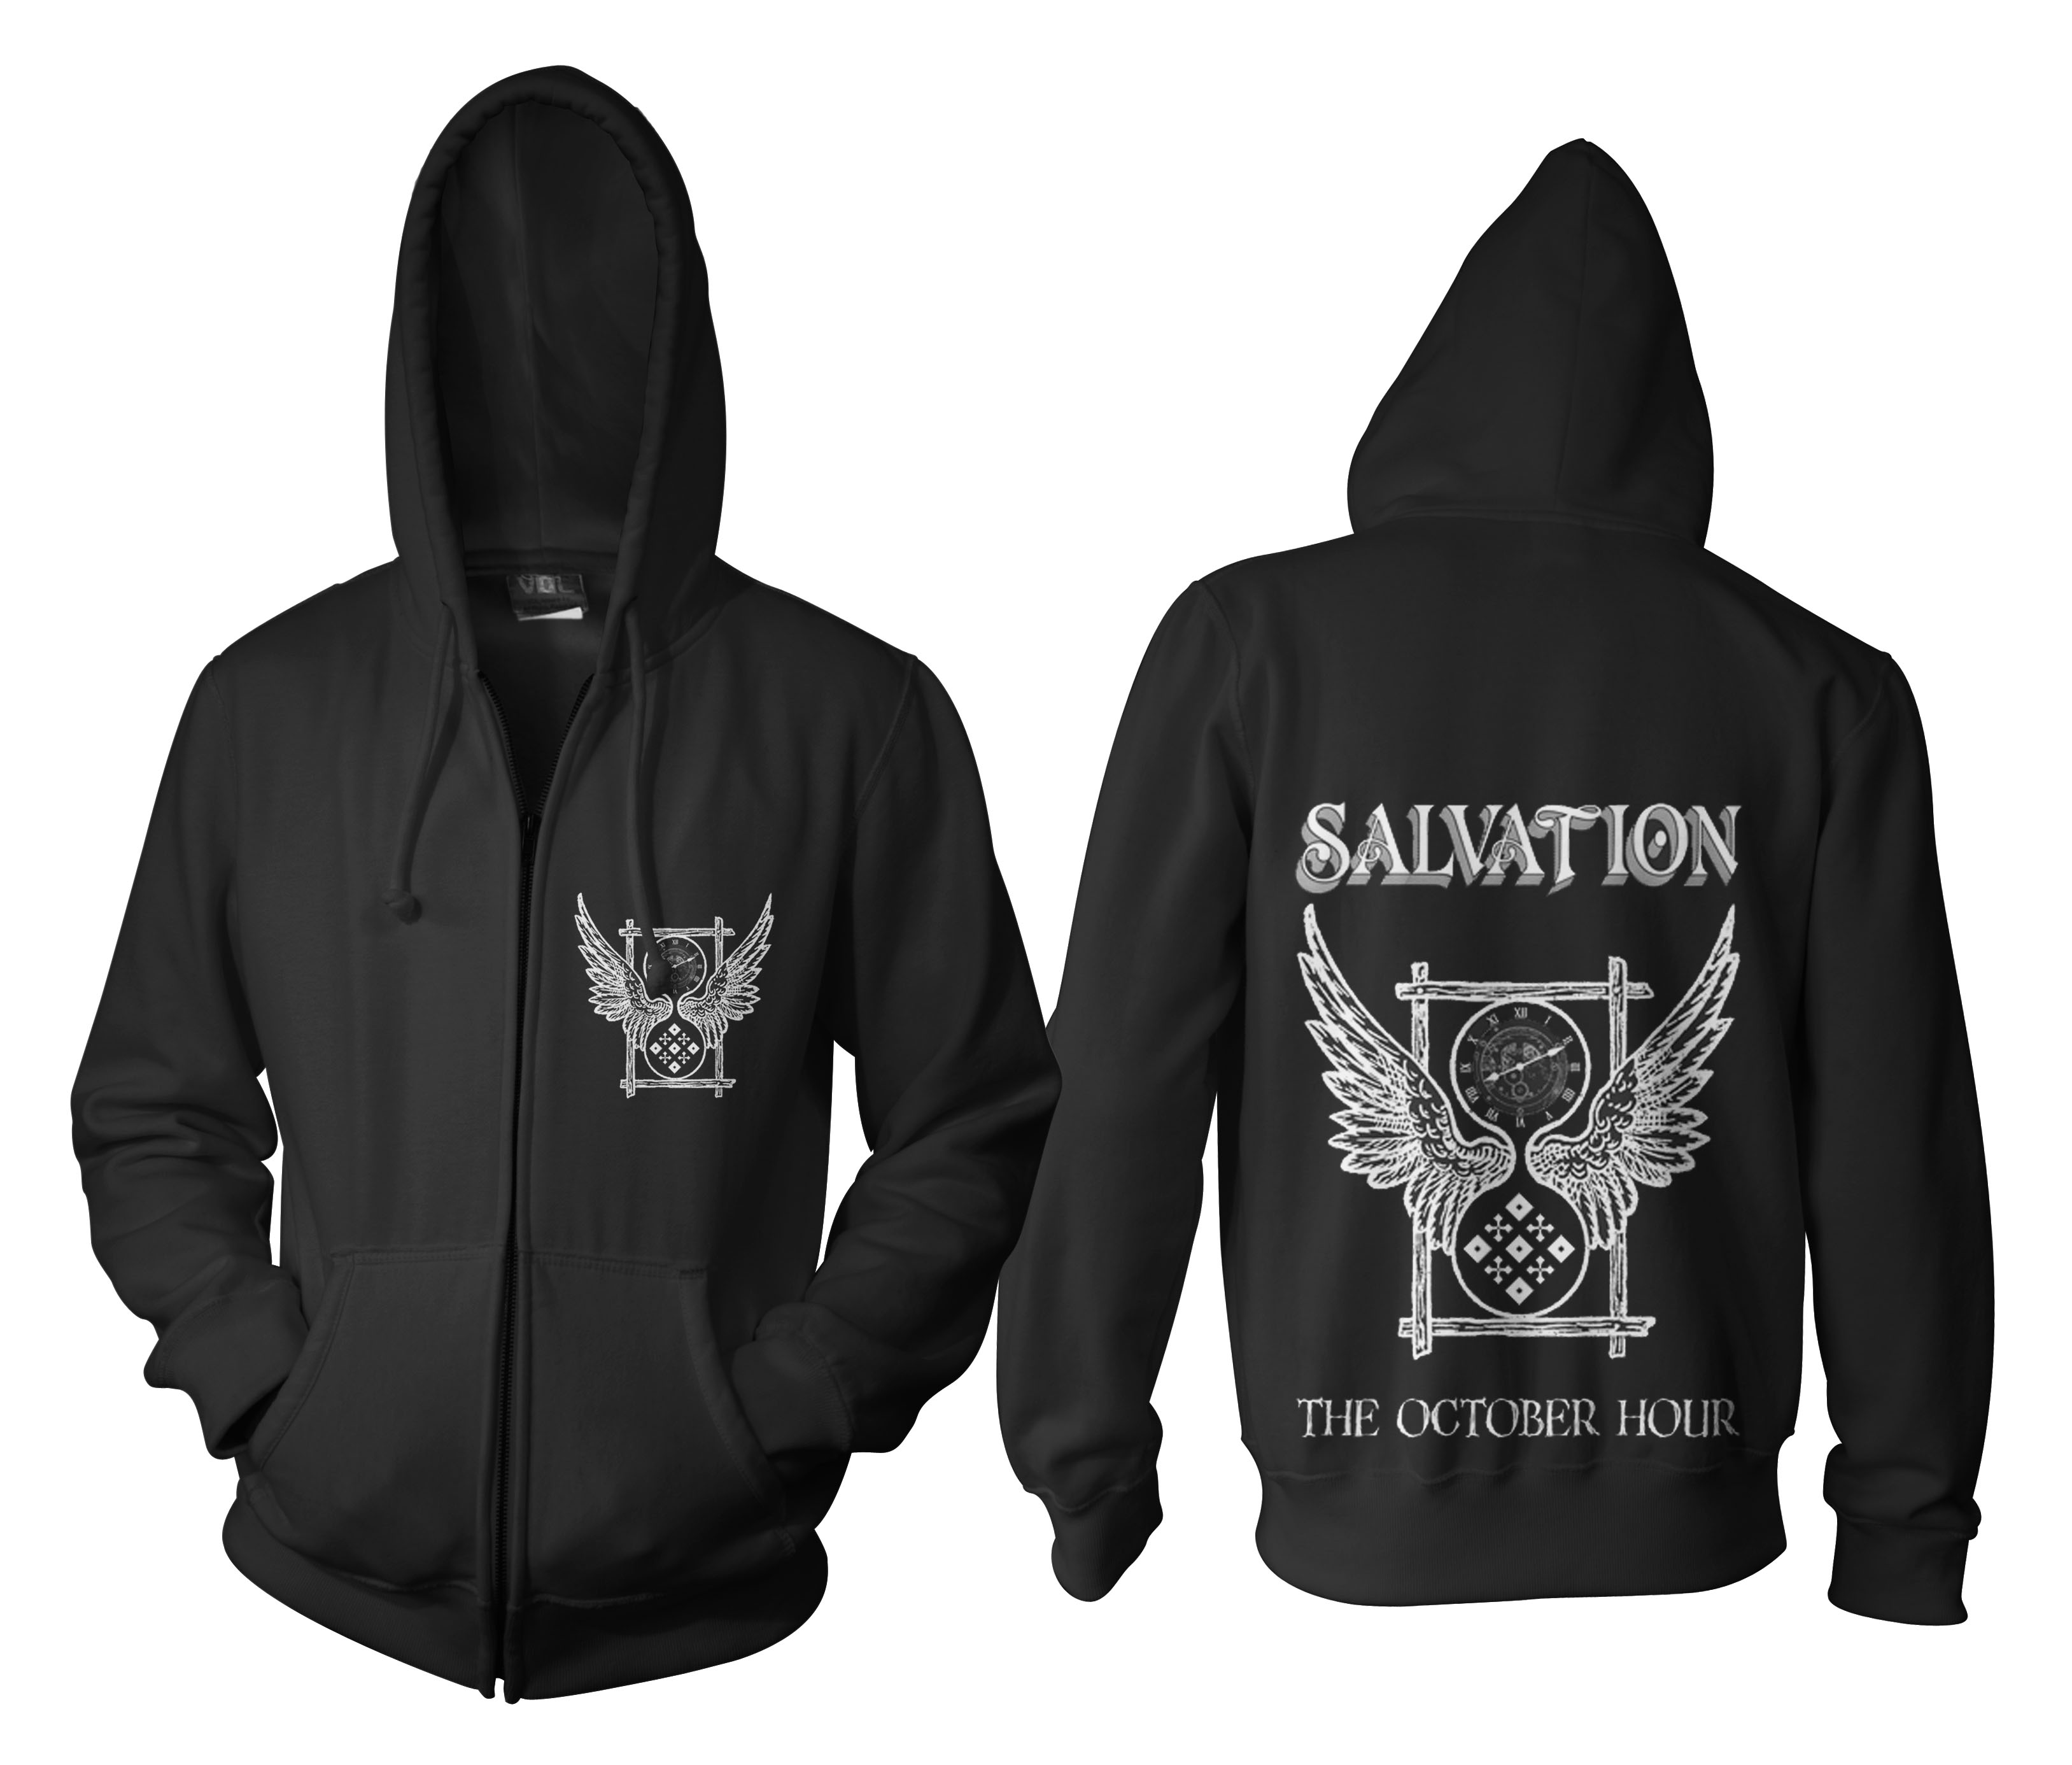 Salvation 2012 Merchandise | Salvation HQ